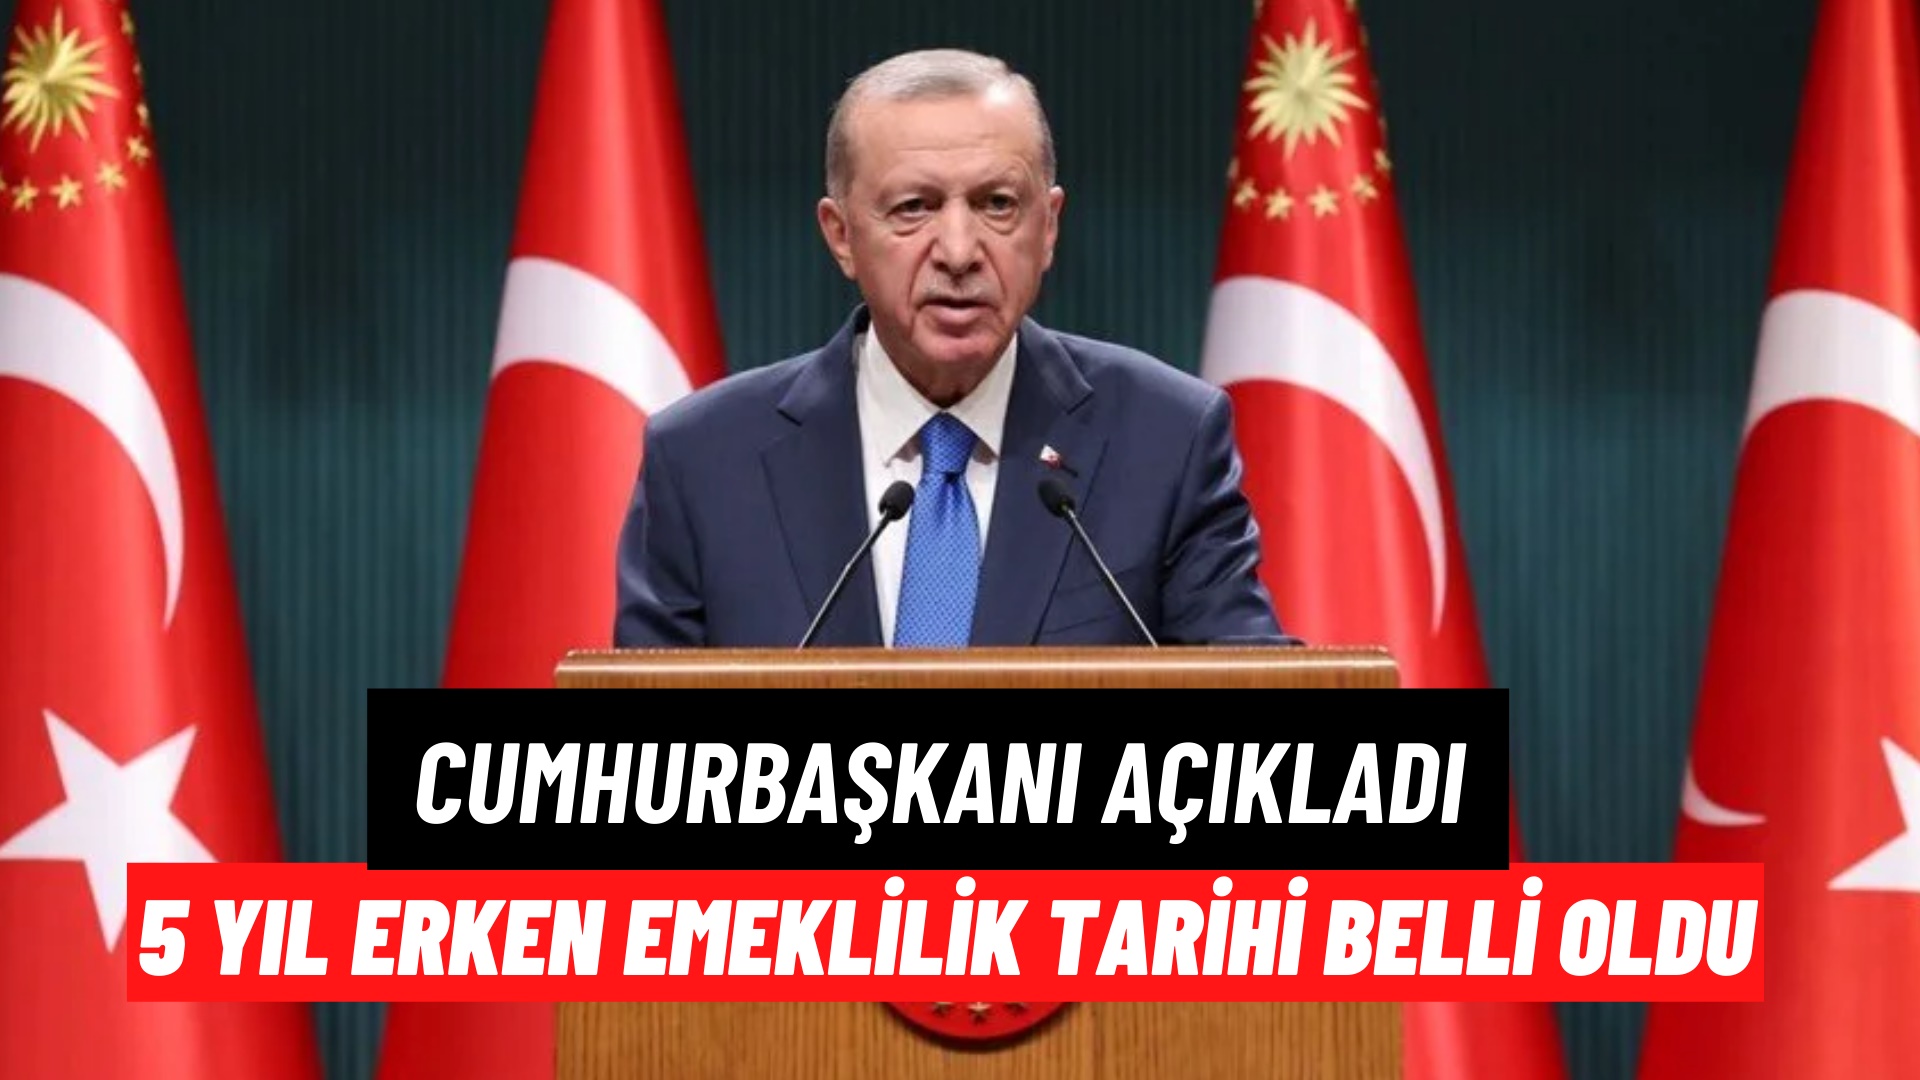 Cumhurbaşkanı Erdoğan 5 yıl erken emeklilik müjdesini açıkladı! SGK sistemi sil baştan değişiyor